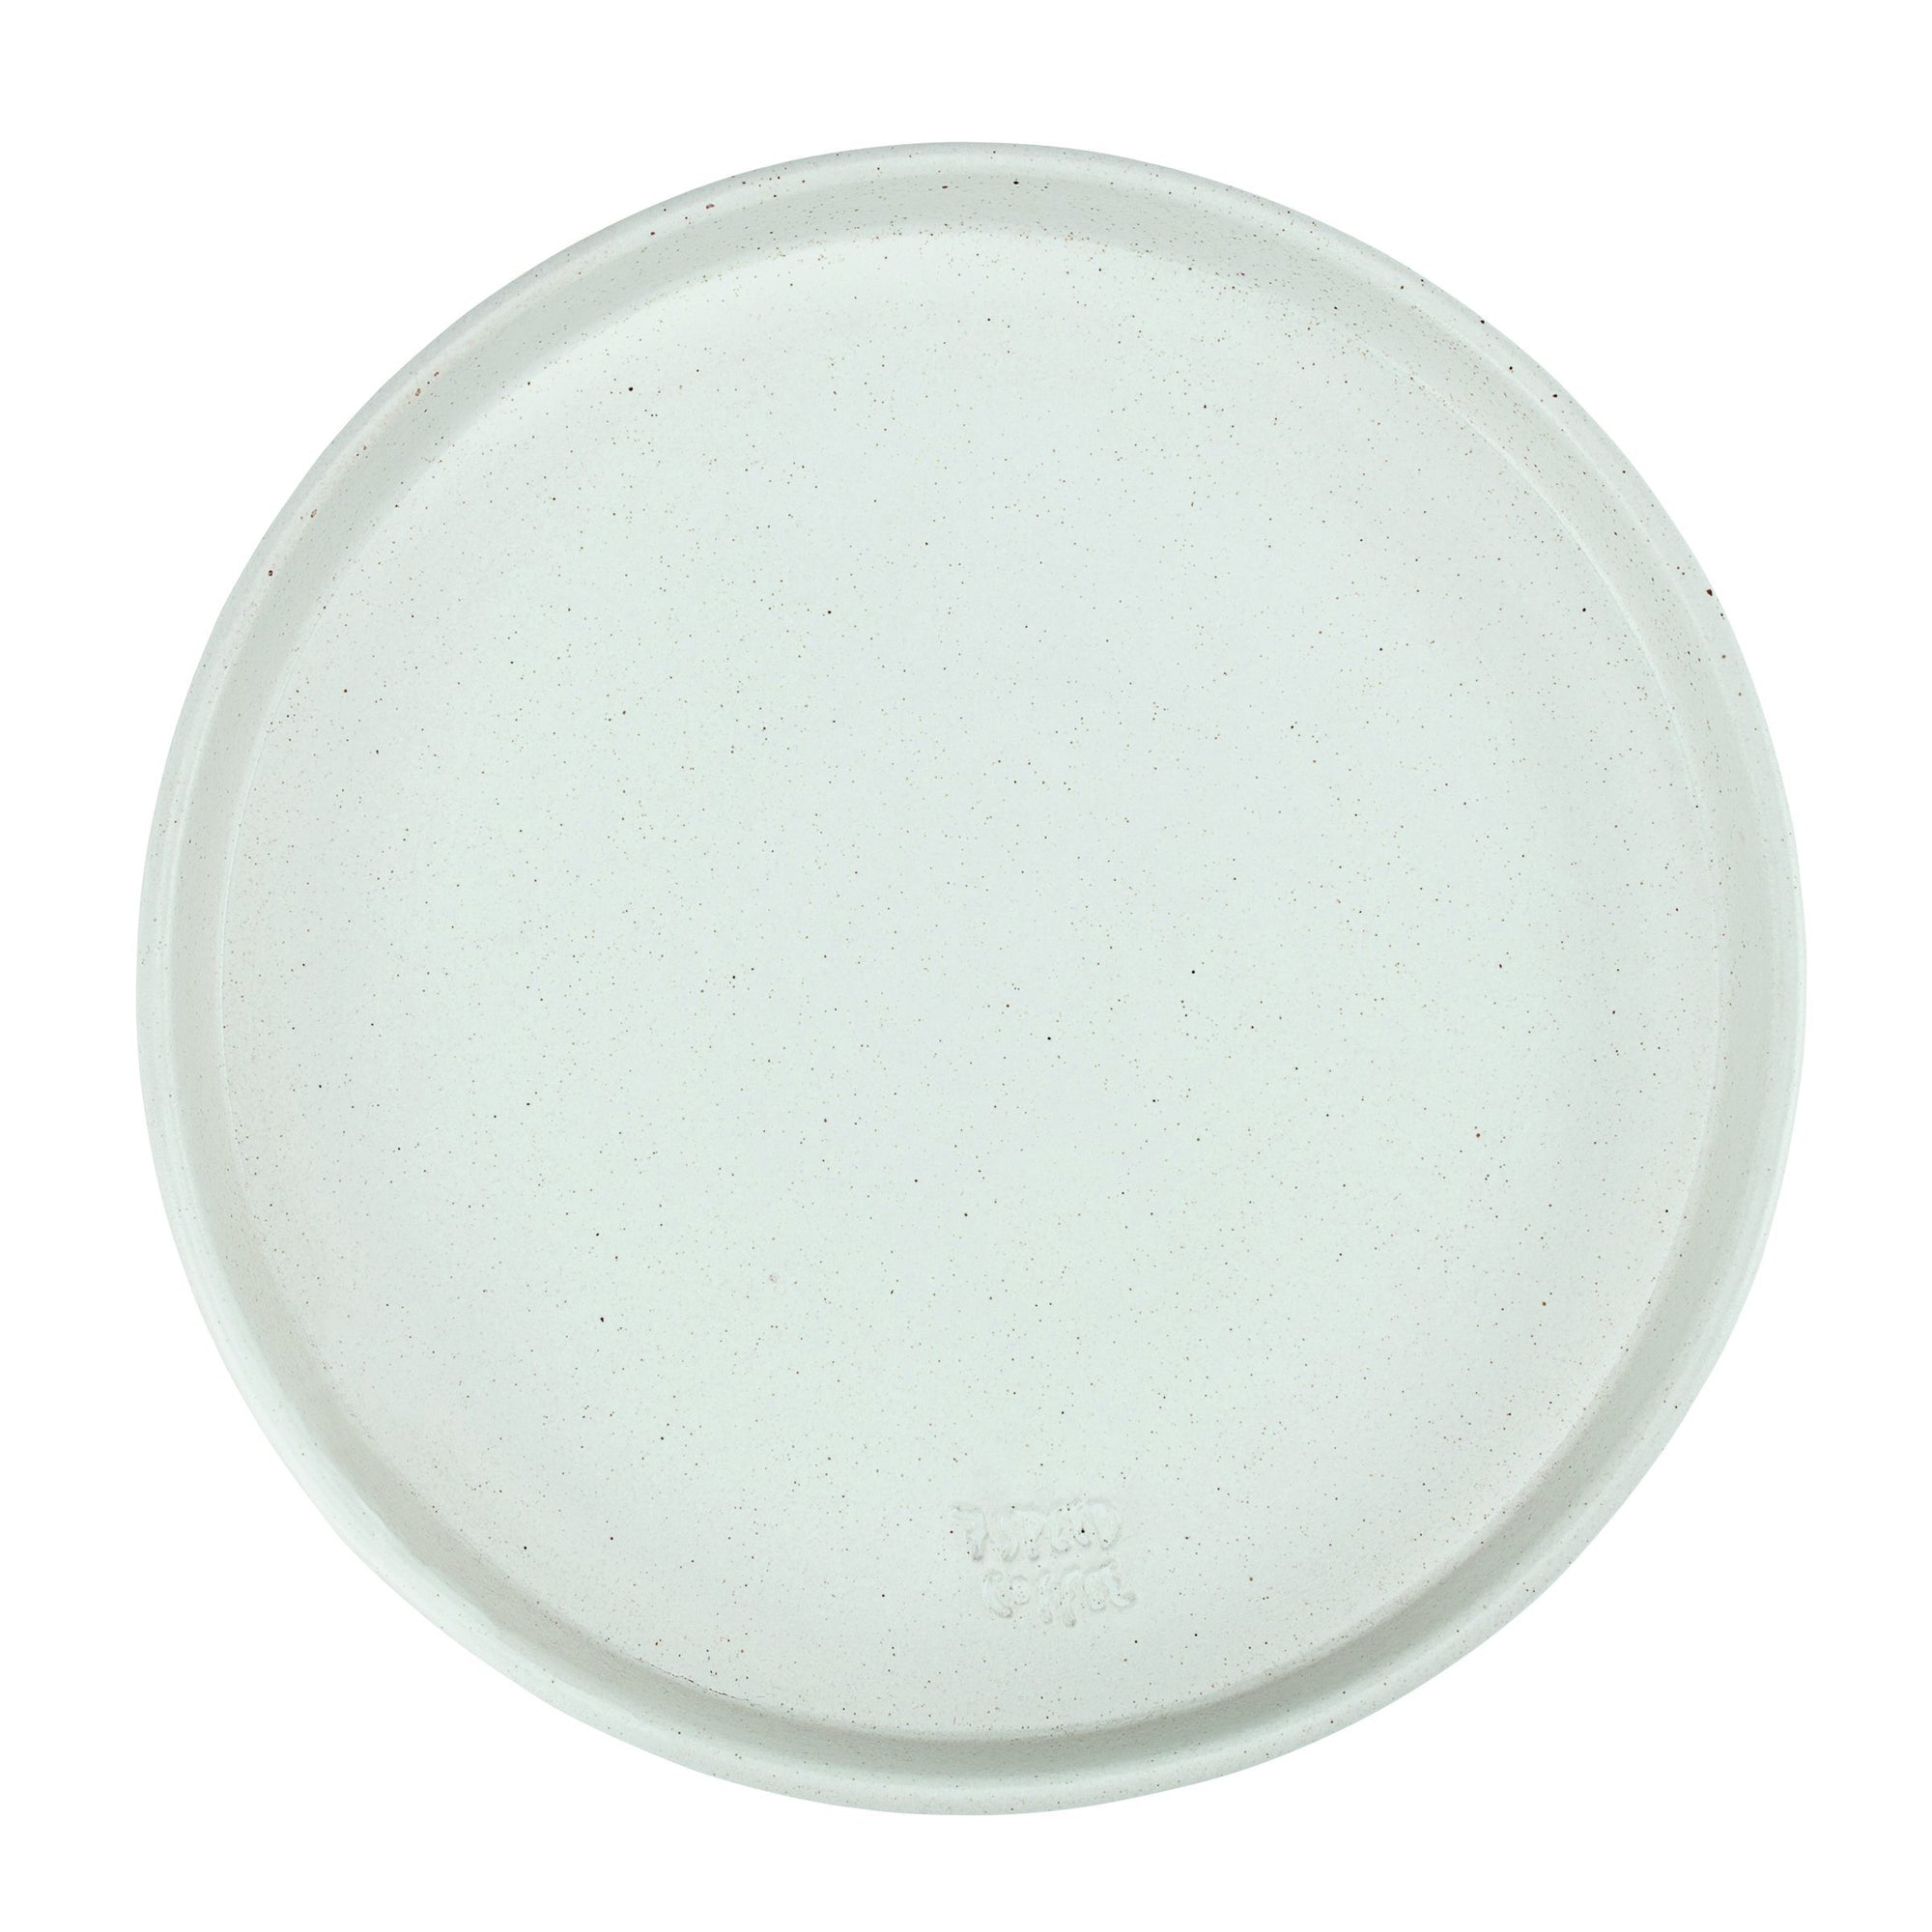 Speckled large dinner plate (BSH1075)